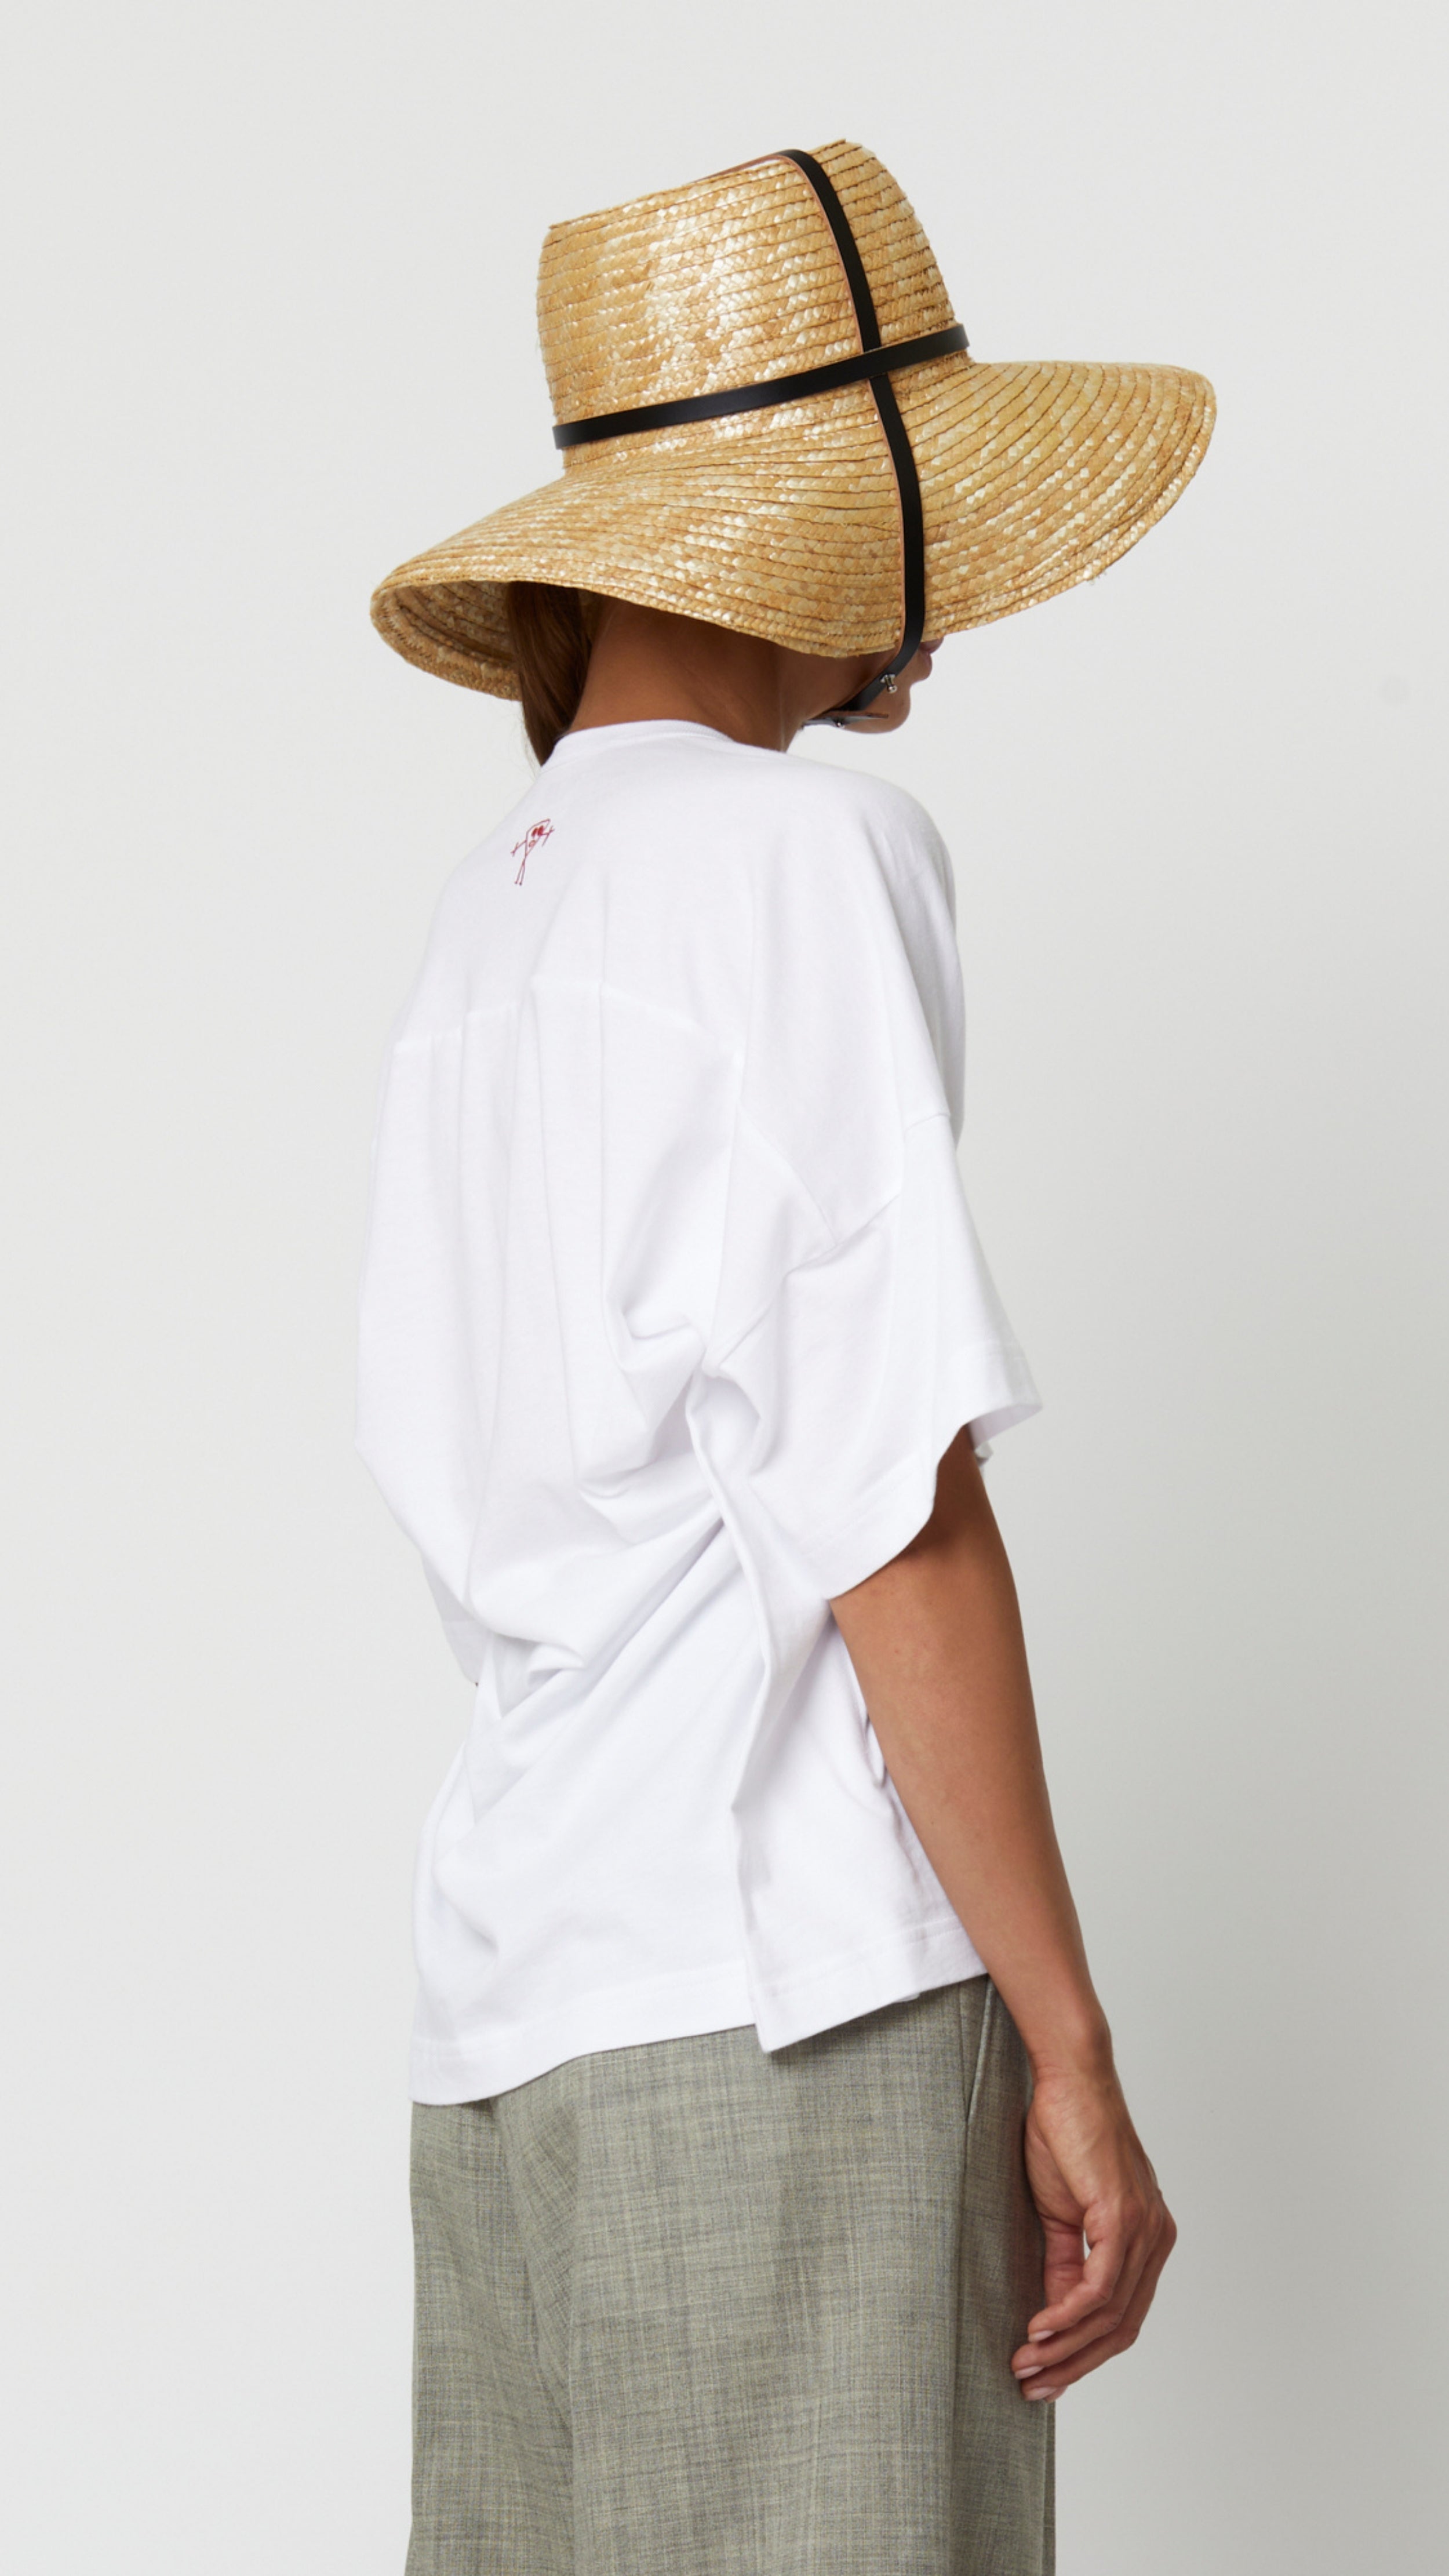 Sombrero de paja de verano